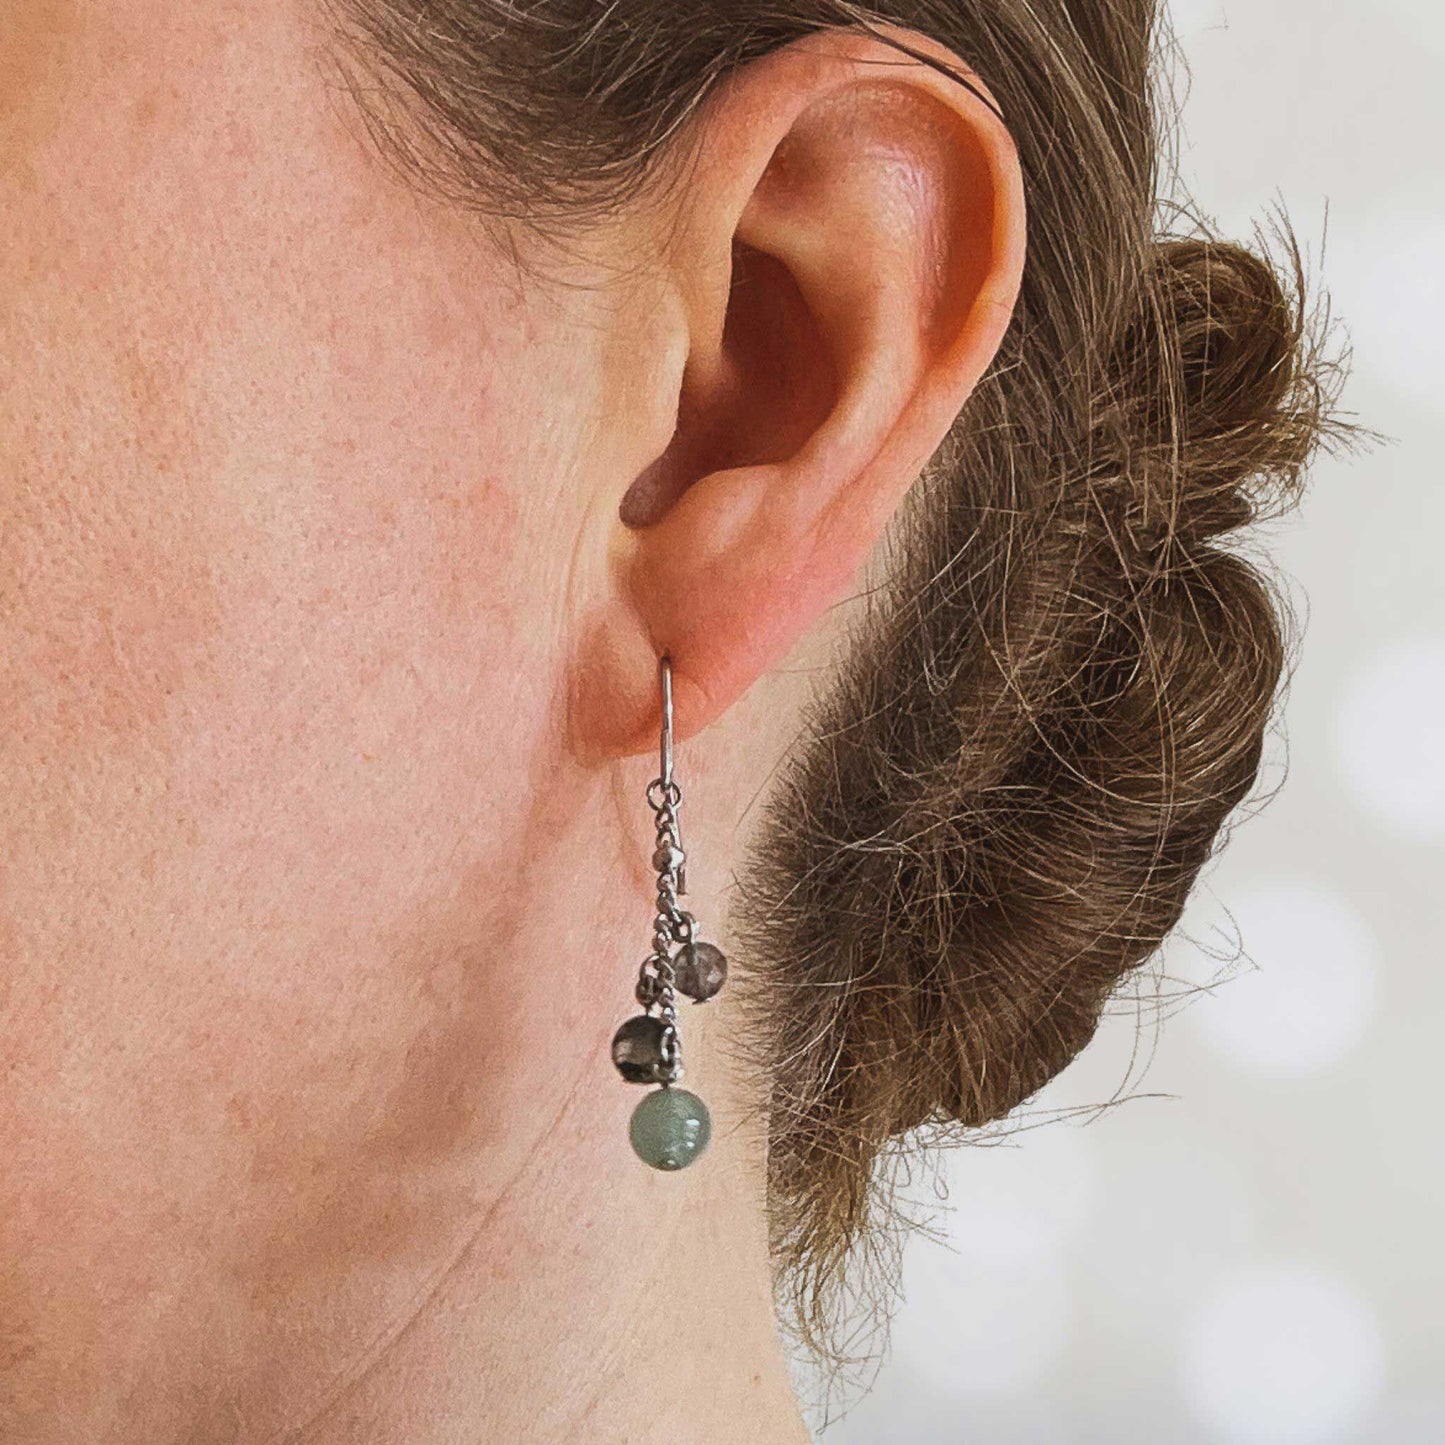 Woman wearing green gemstone drop earring in earlobe